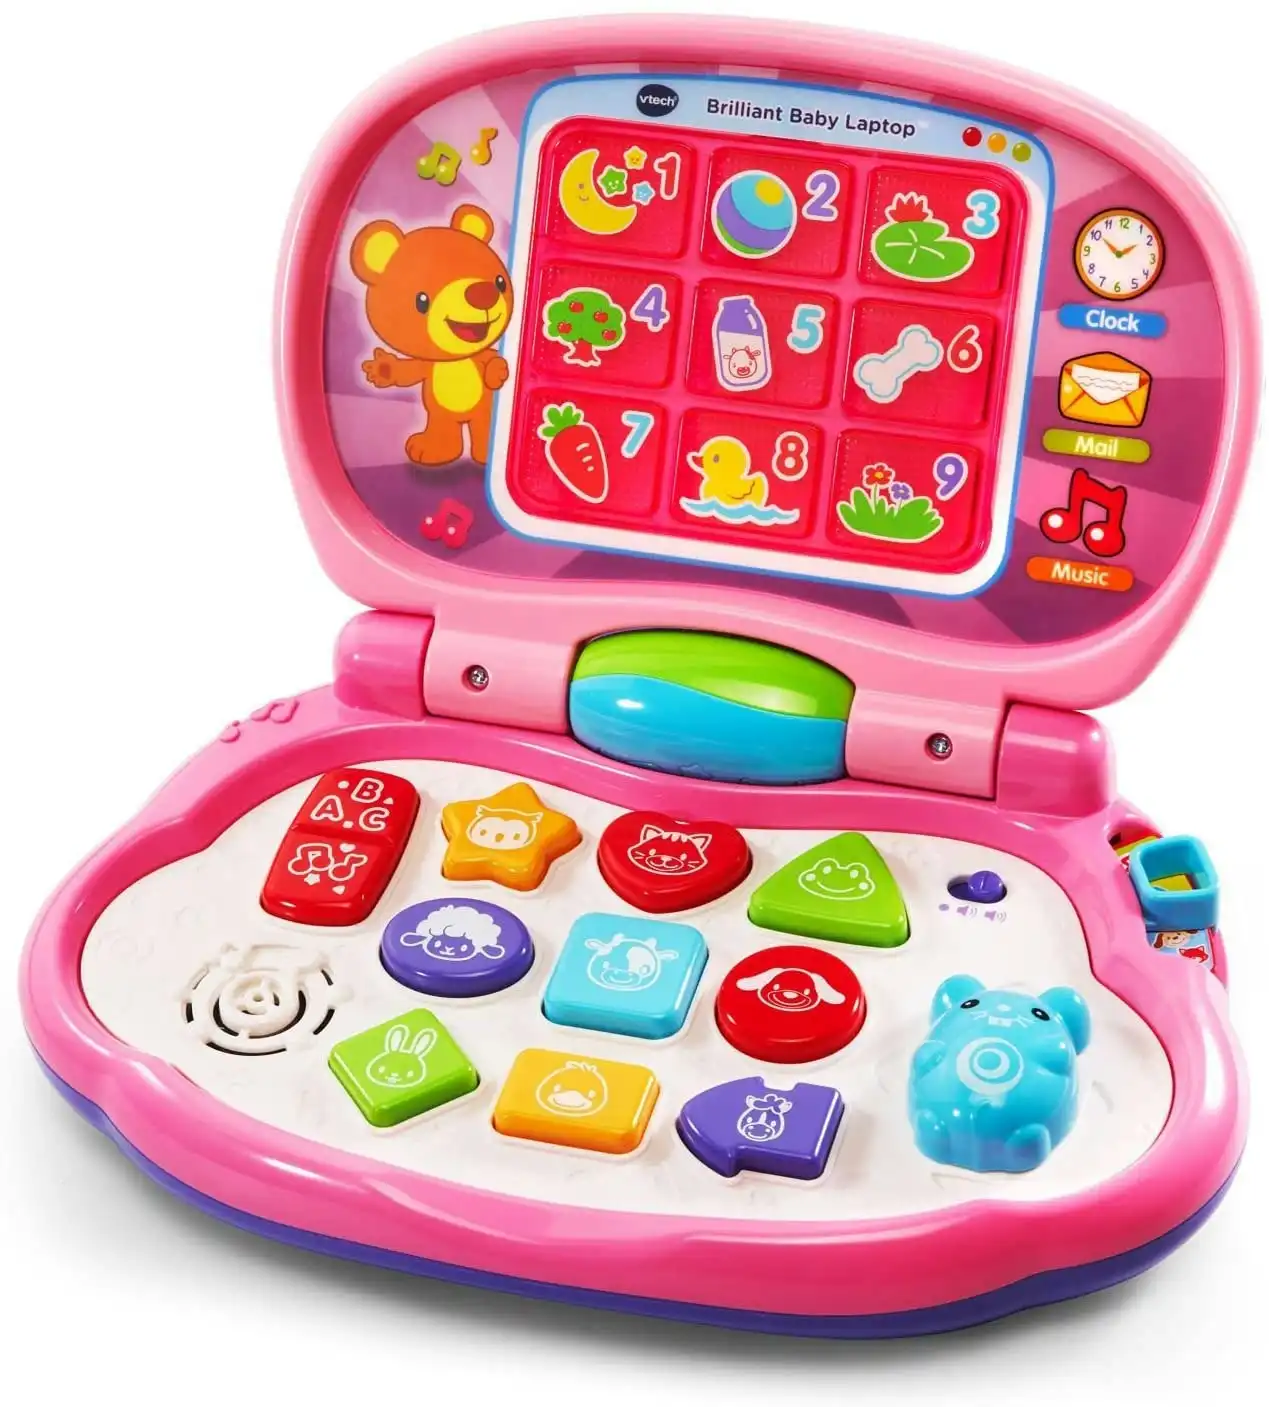 VTech - Brilliant Baby Laptop Pink VTech